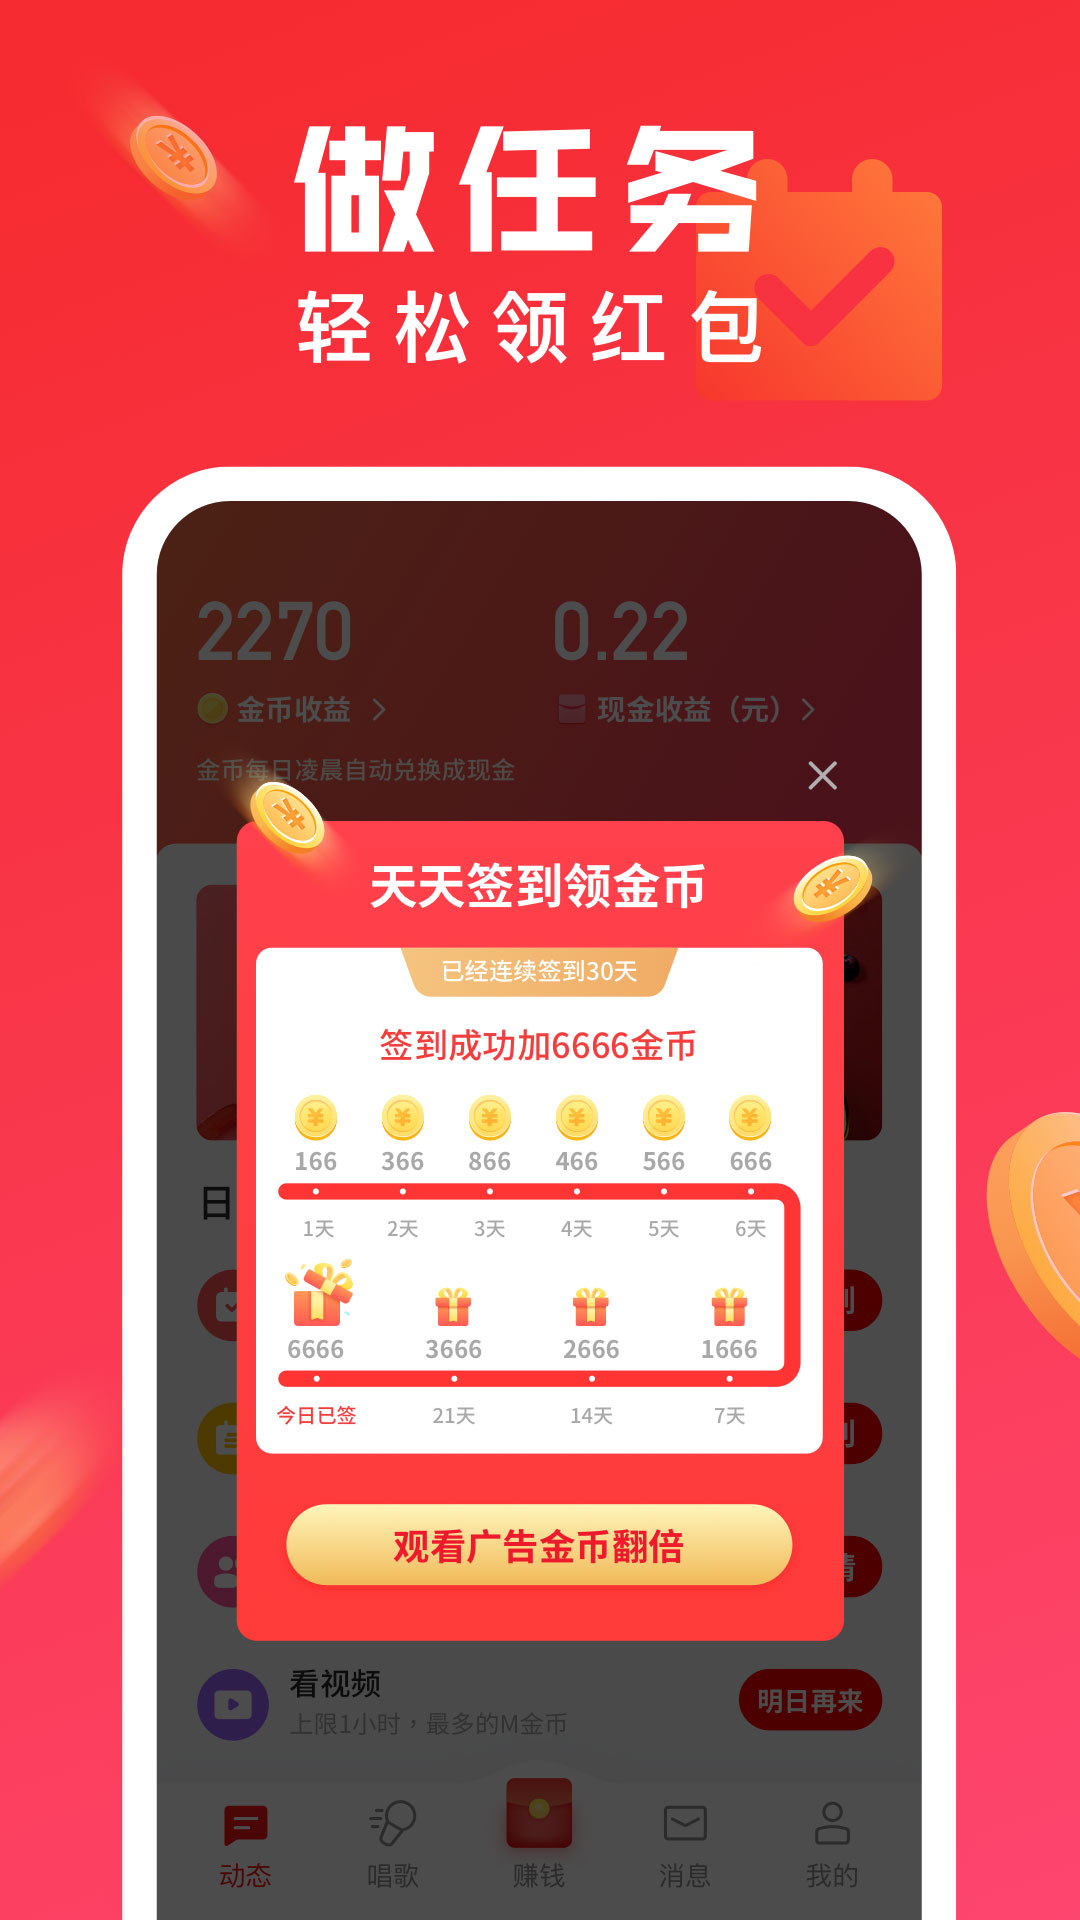 全民K歌极速版app 7.7.30.2817.7.30.281